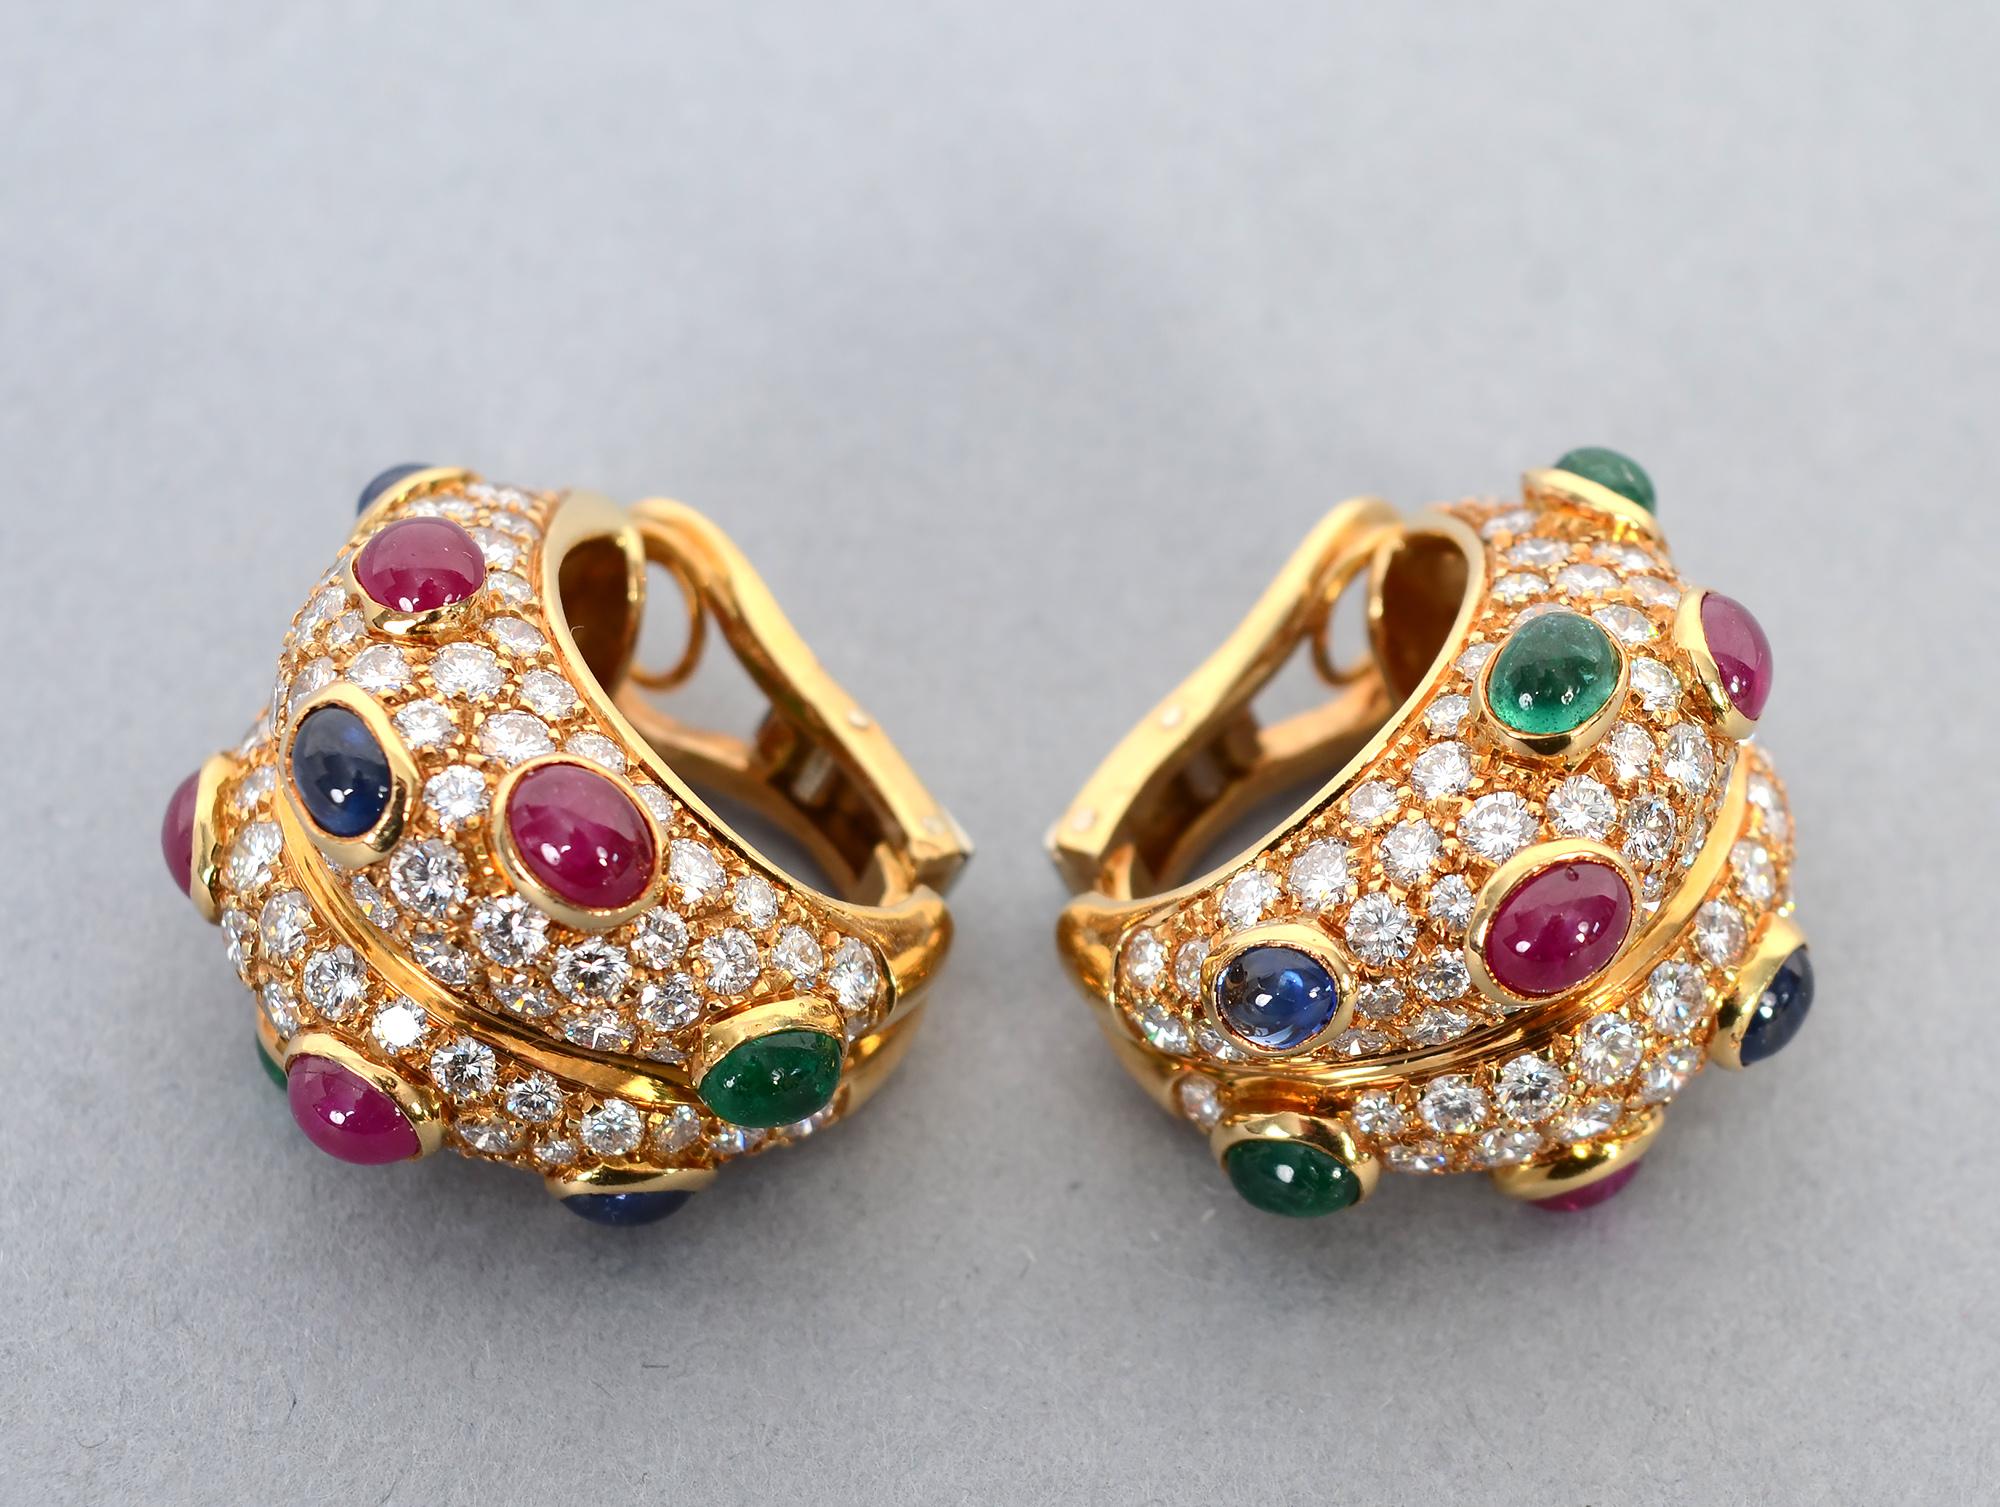 Boucles d'oreilles élégantes et passionnantes en or 18 carats avec 9 carats de diamants. Les pierres sont de couleur F-G et de qualité VVS - VS. En outre, ils sont sertis de rubis, d'émeraudes et de saphirs cabochons. Les boucles d'oreilles mesurent